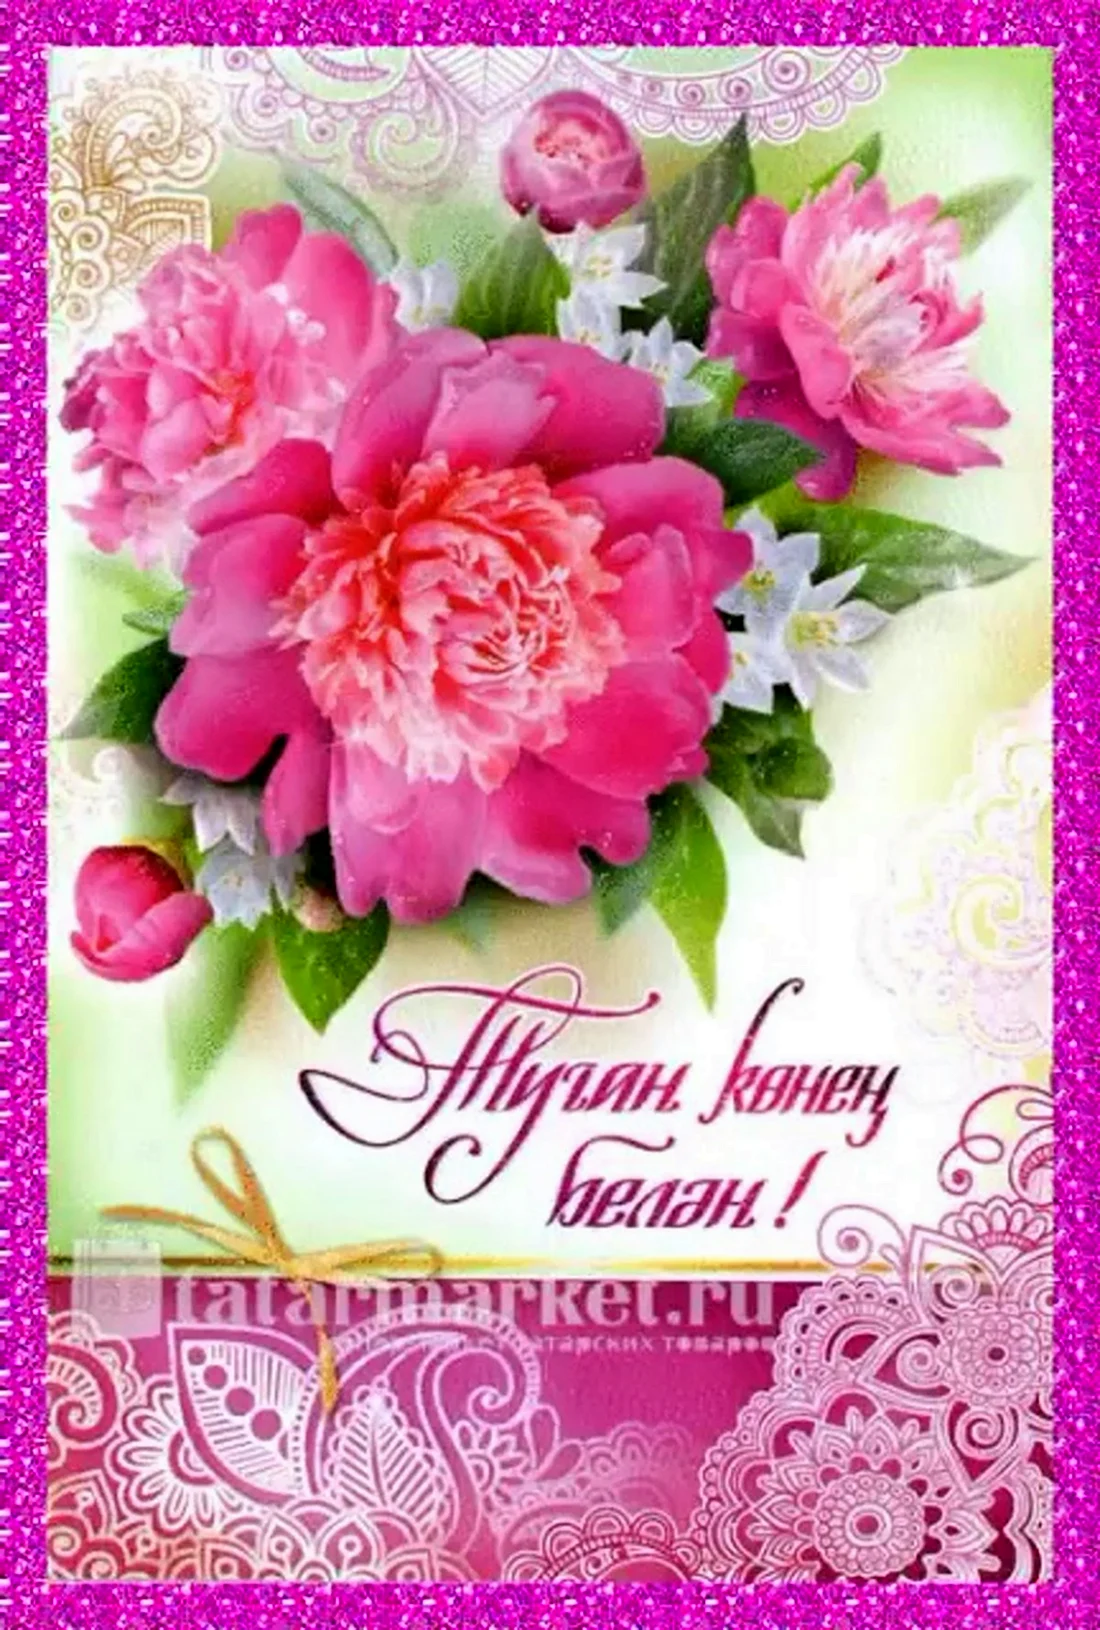 Поздравления с днём рождения женщине на татарском языке. Открытка с поздравлением